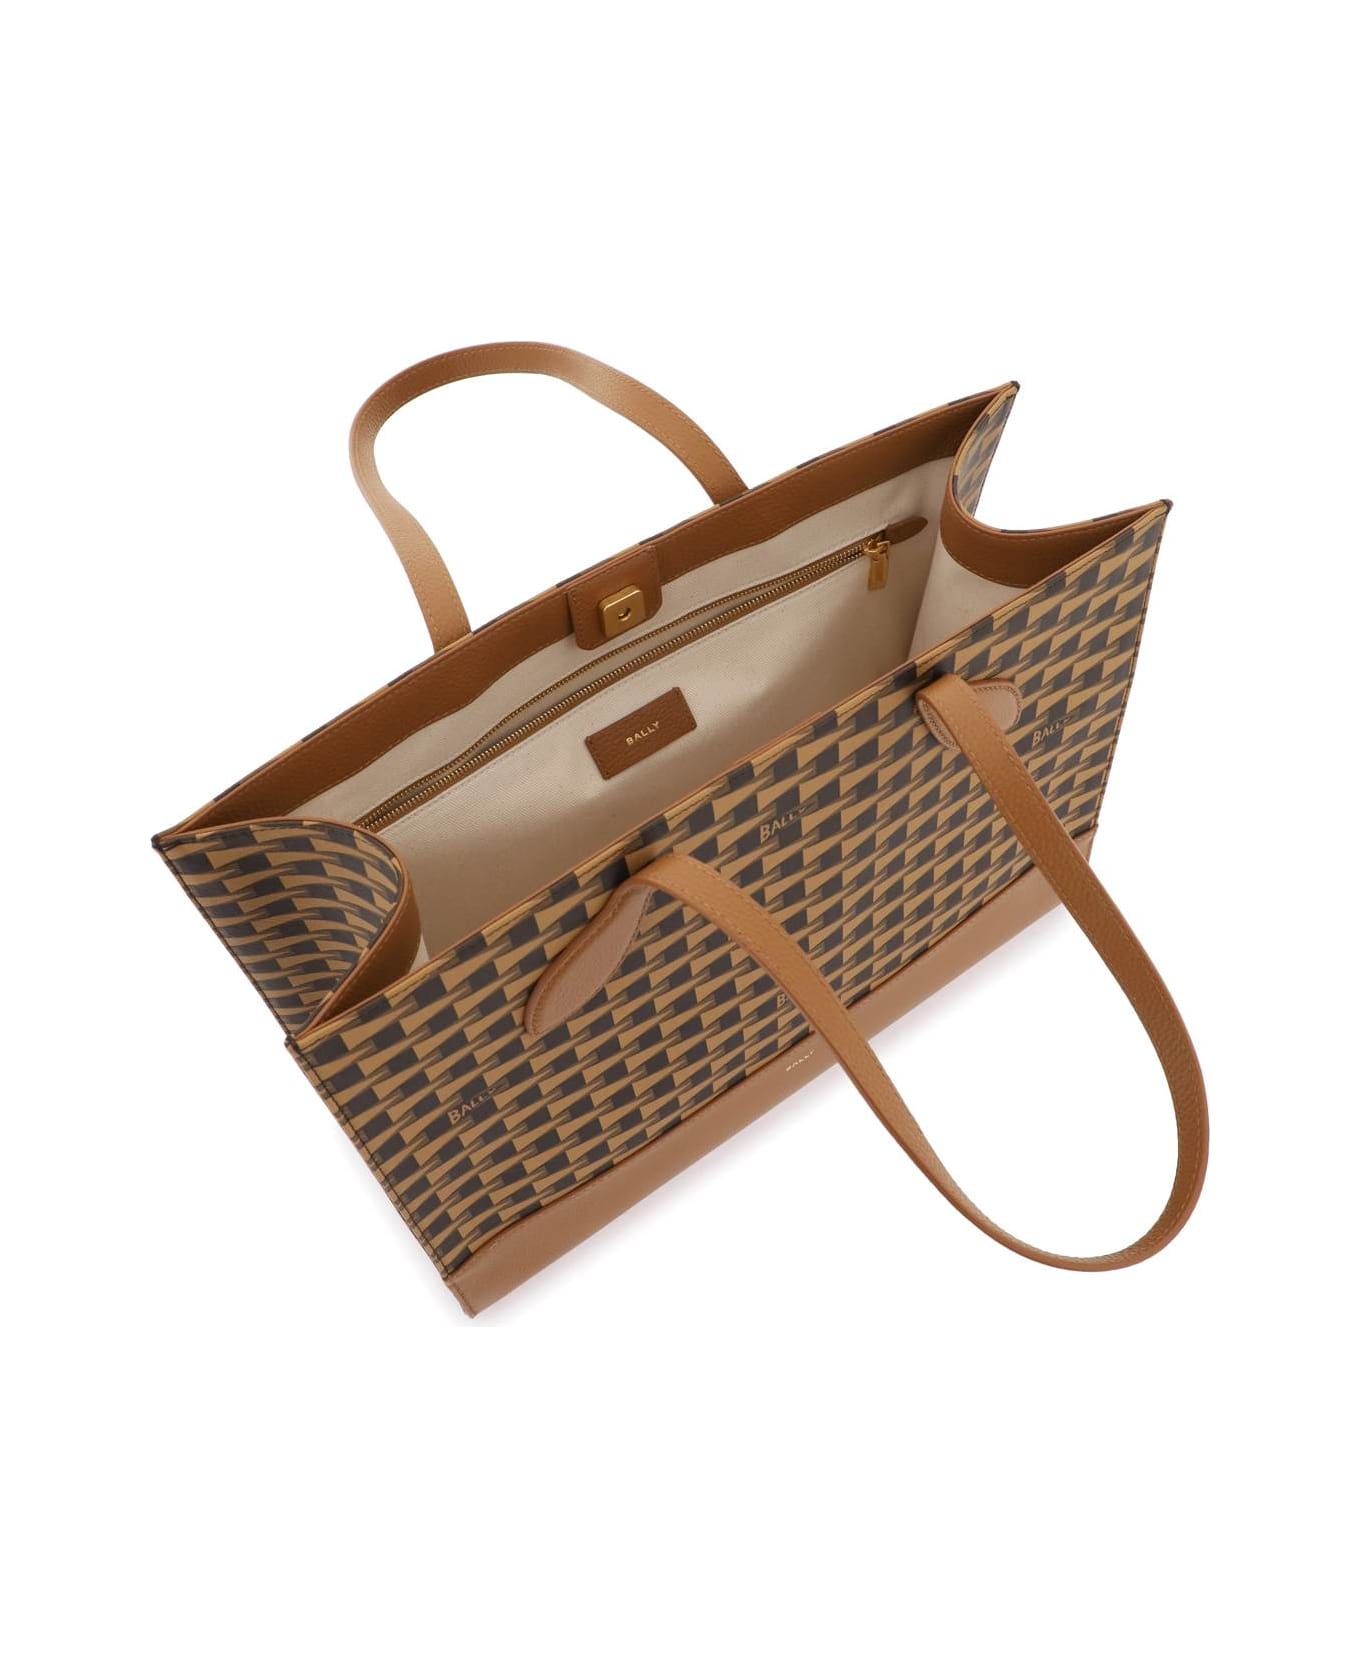 Bally 'pennant' Tote Bag - MULTIDESERTO ORO (Brown)